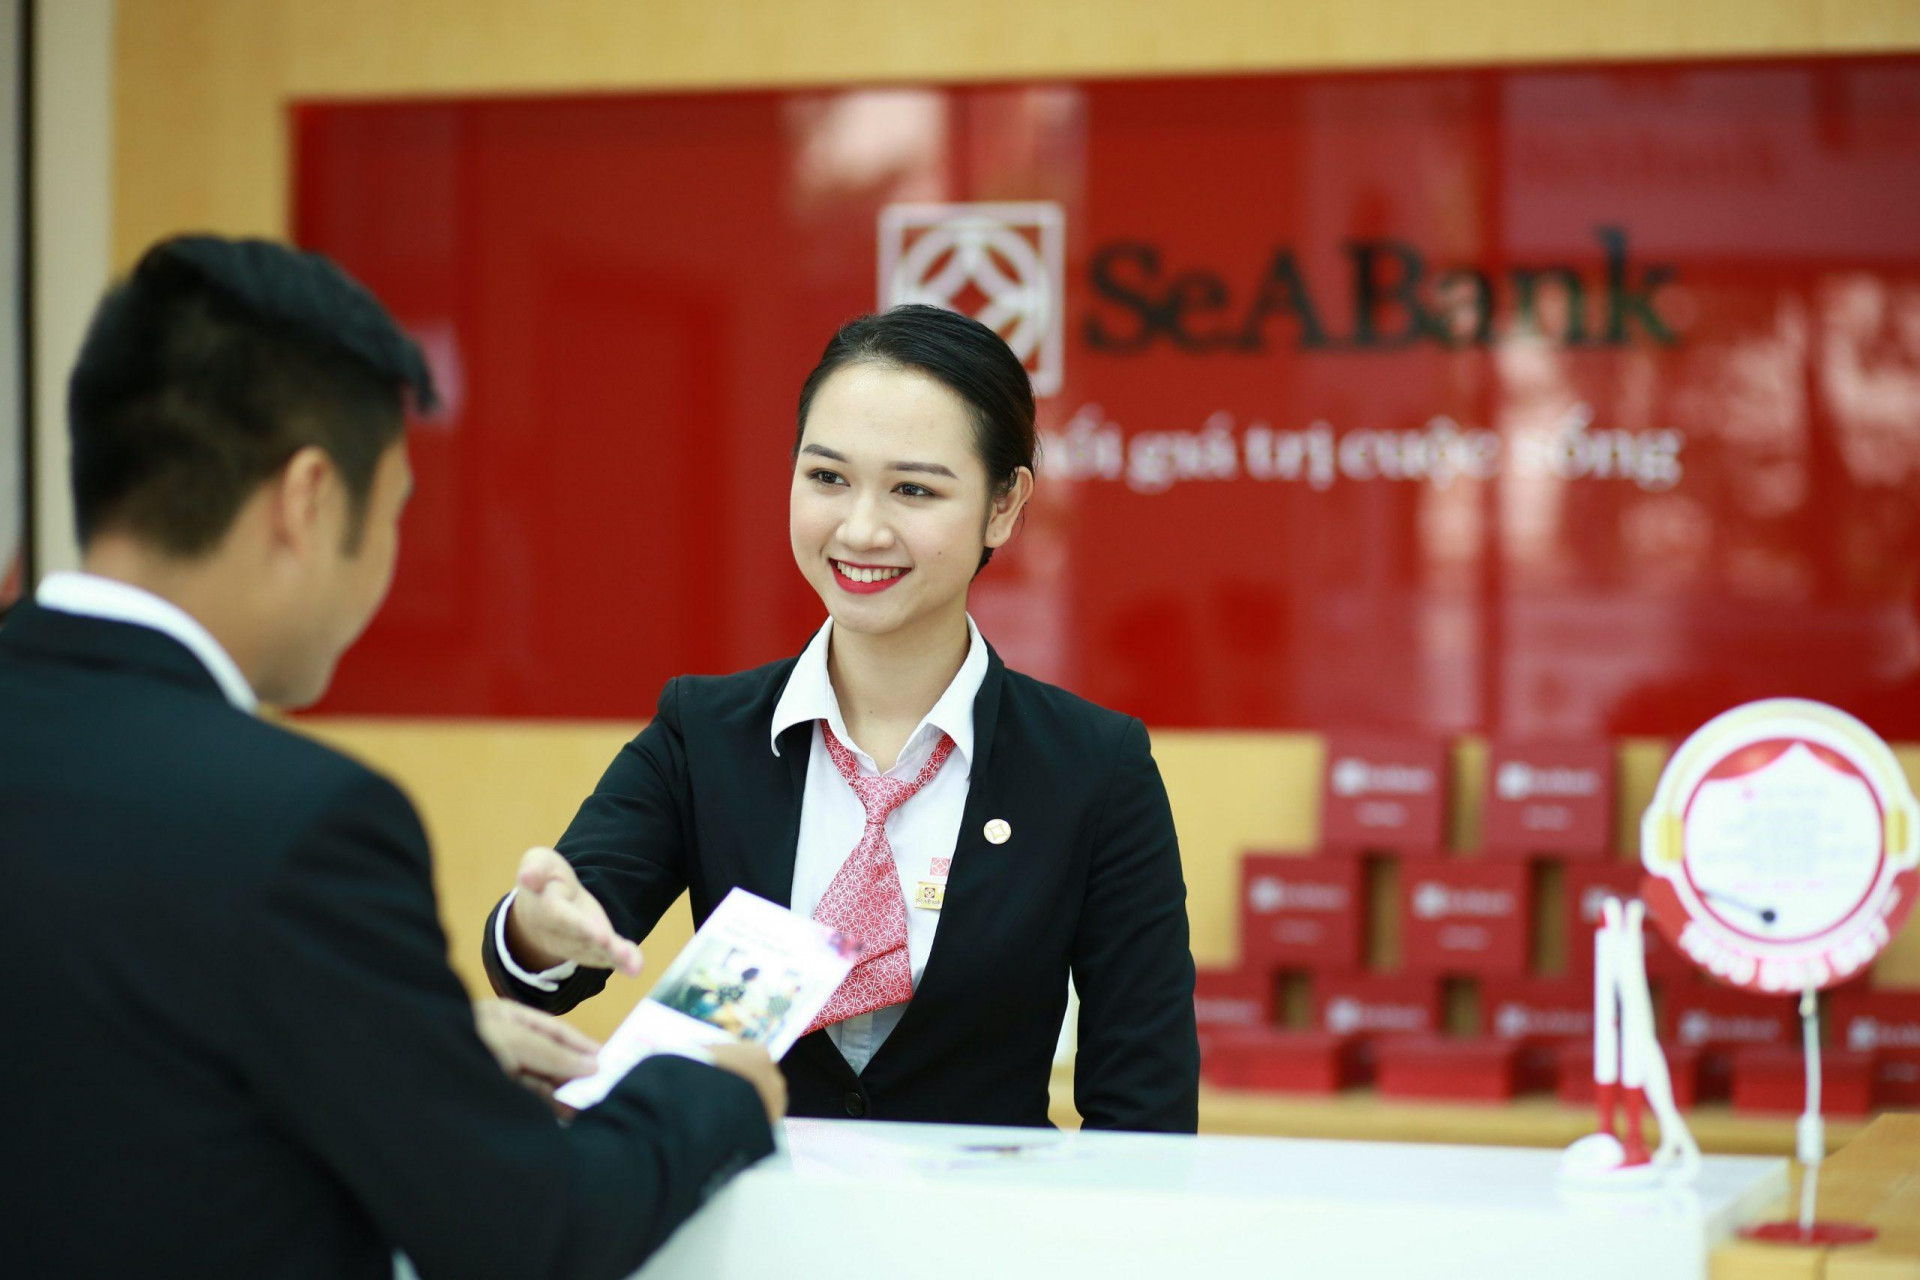 Tính đến ngày 30/9/2021, SeABank có hơn 2.000 tỷ đồng lợi nhuận chưa phân phối, tăng gần 80% so với đầu năm.